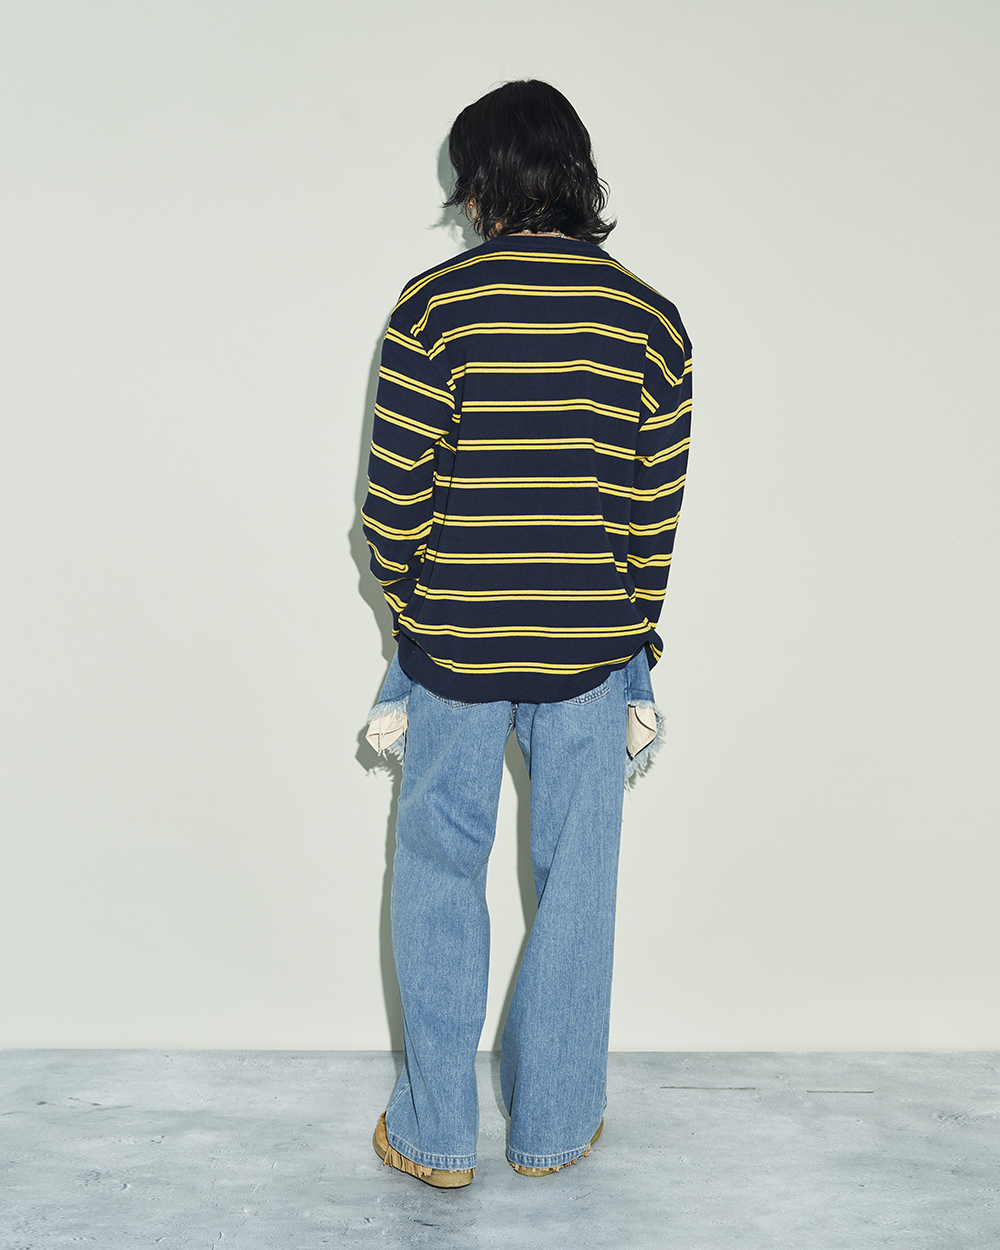 コトハヨコザワのレイヤードデニムパンツを穿いた男性モデル